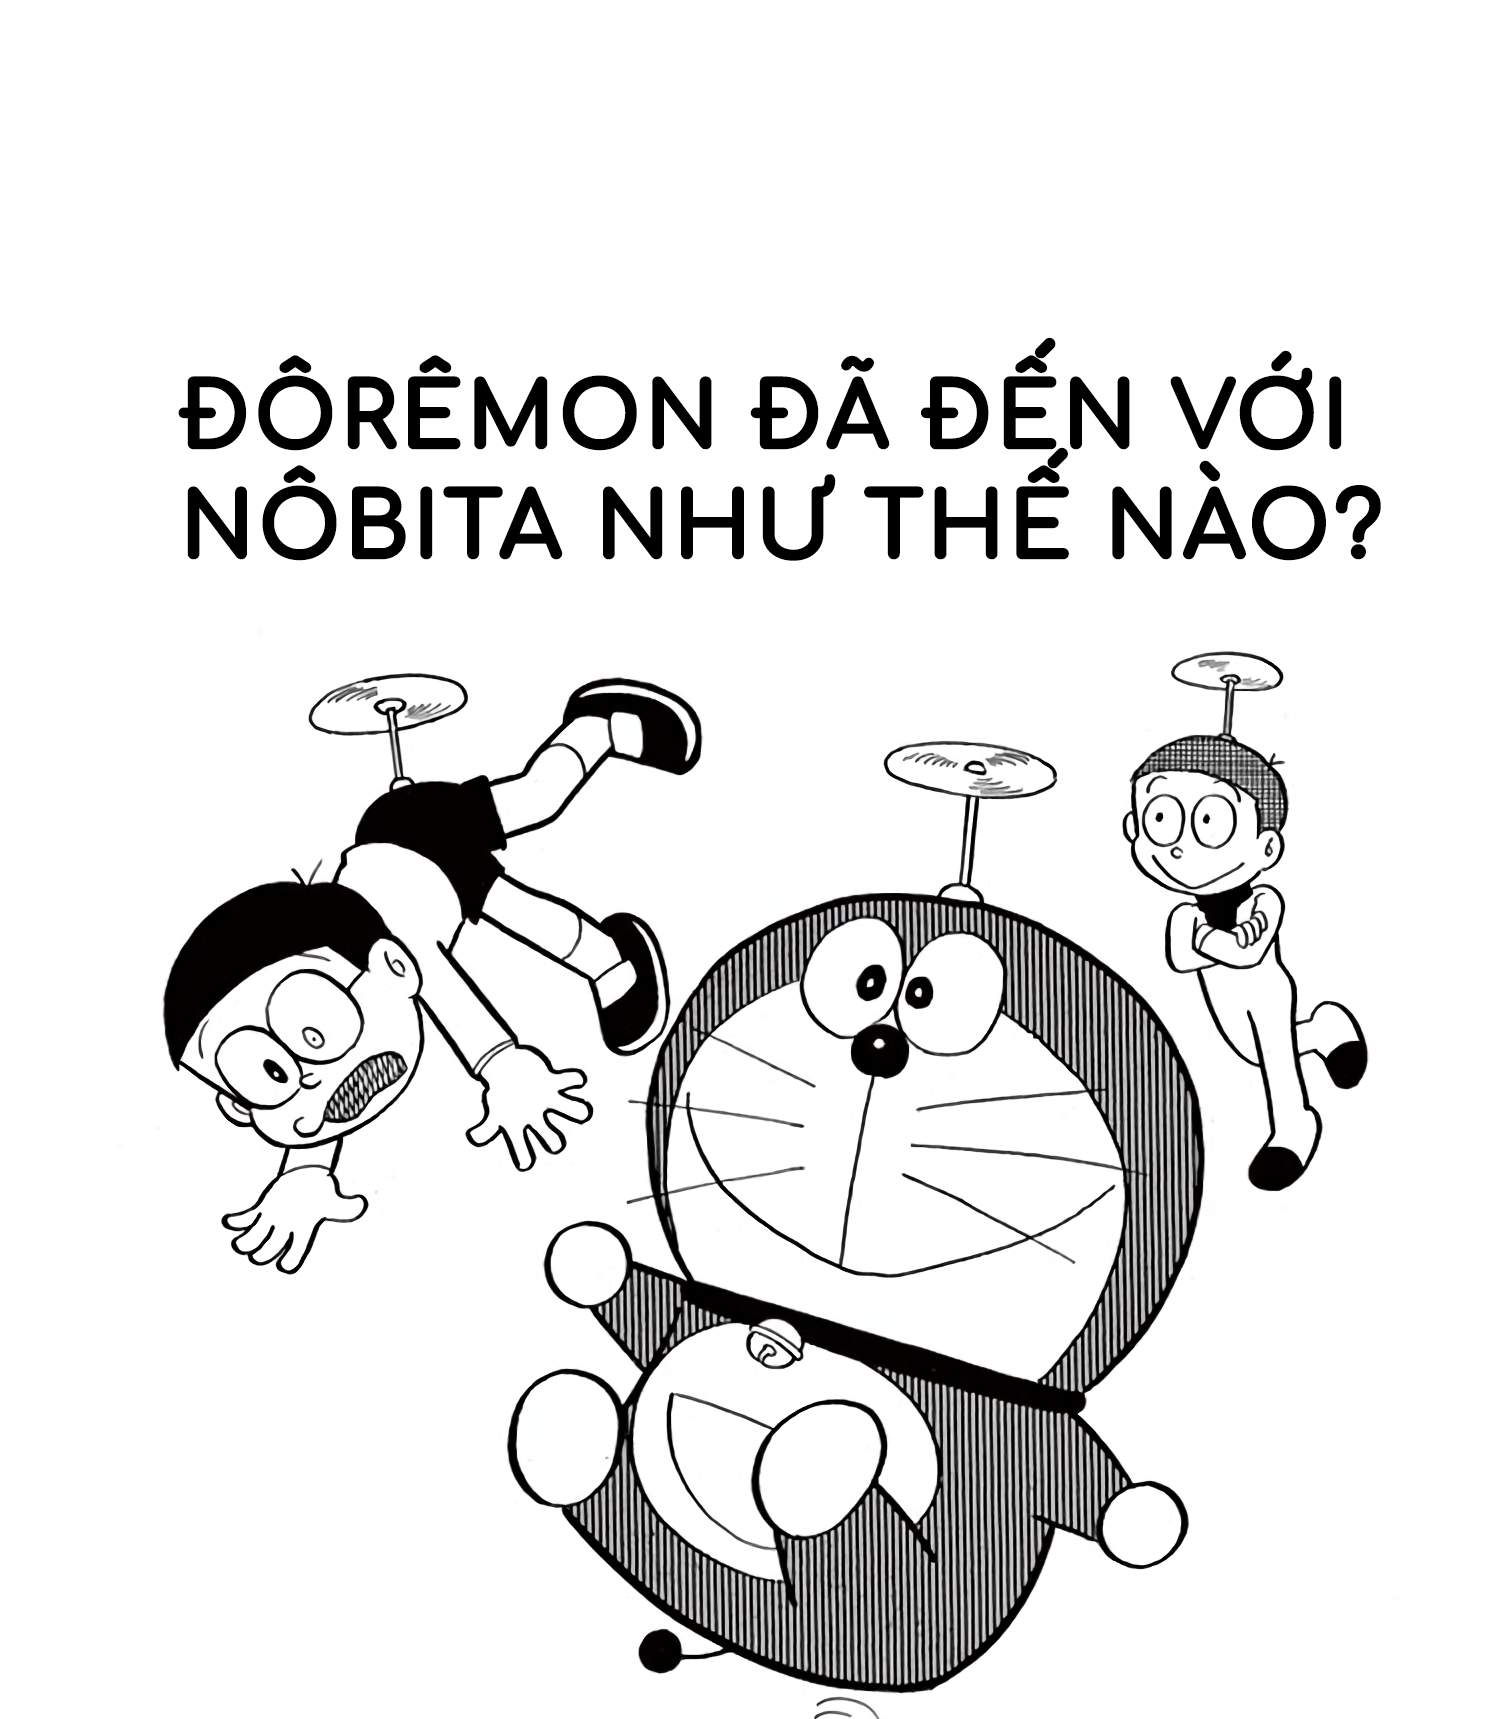 Hãy khám phá những bí mật của Wikia Doraemon tiếng Việt và điều bất ngờ sẽ chờ bạn trong thế giới ảo của Doraemon và các bạn.